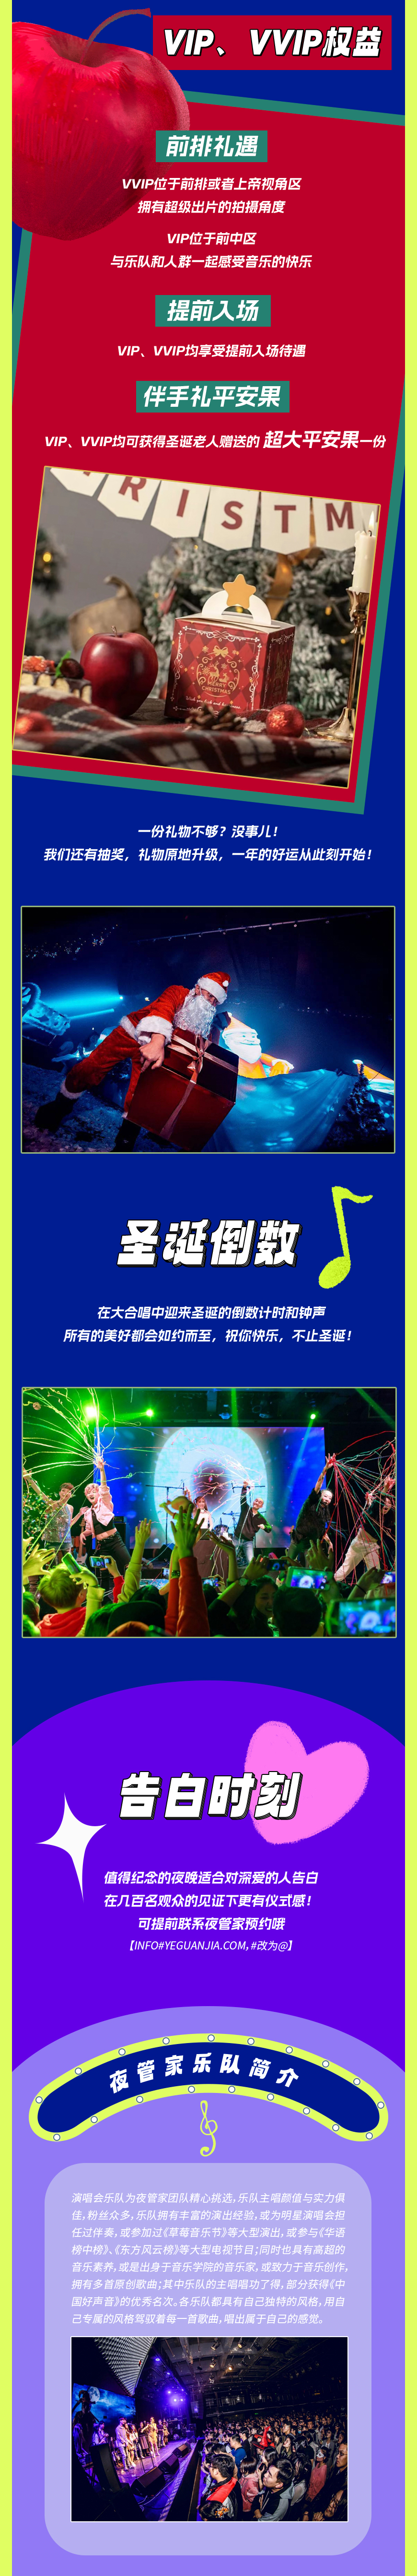 2022“平安夜一起来听歌”圣诞演唱会-圣诞倒数，与你共渡-杭州站